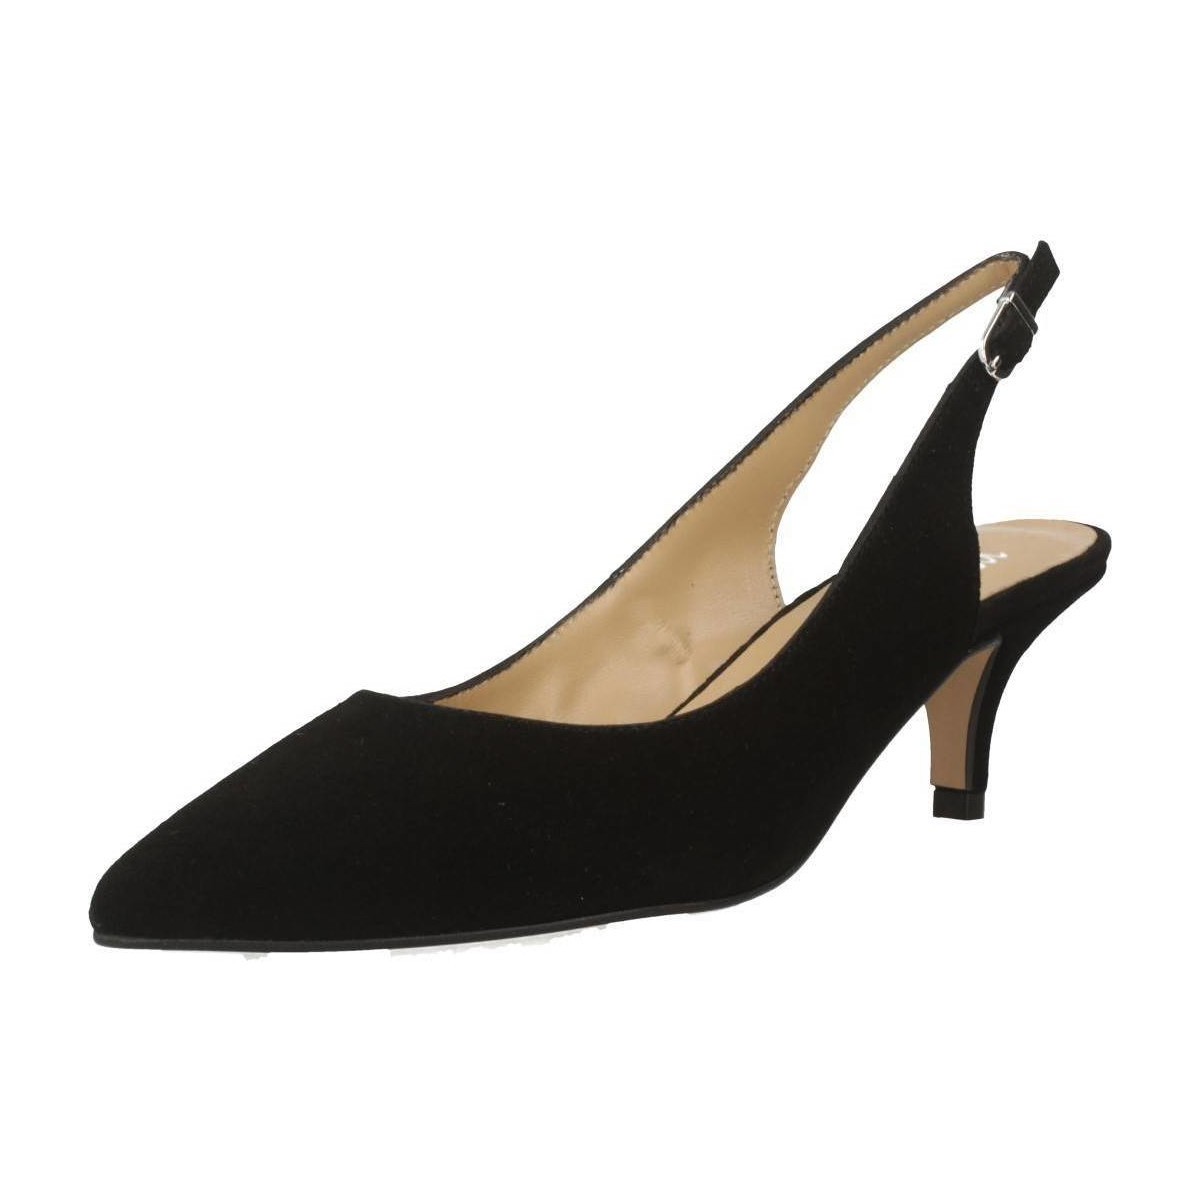 Chaussures Femme Escarpins Mamalola 5421 Noir